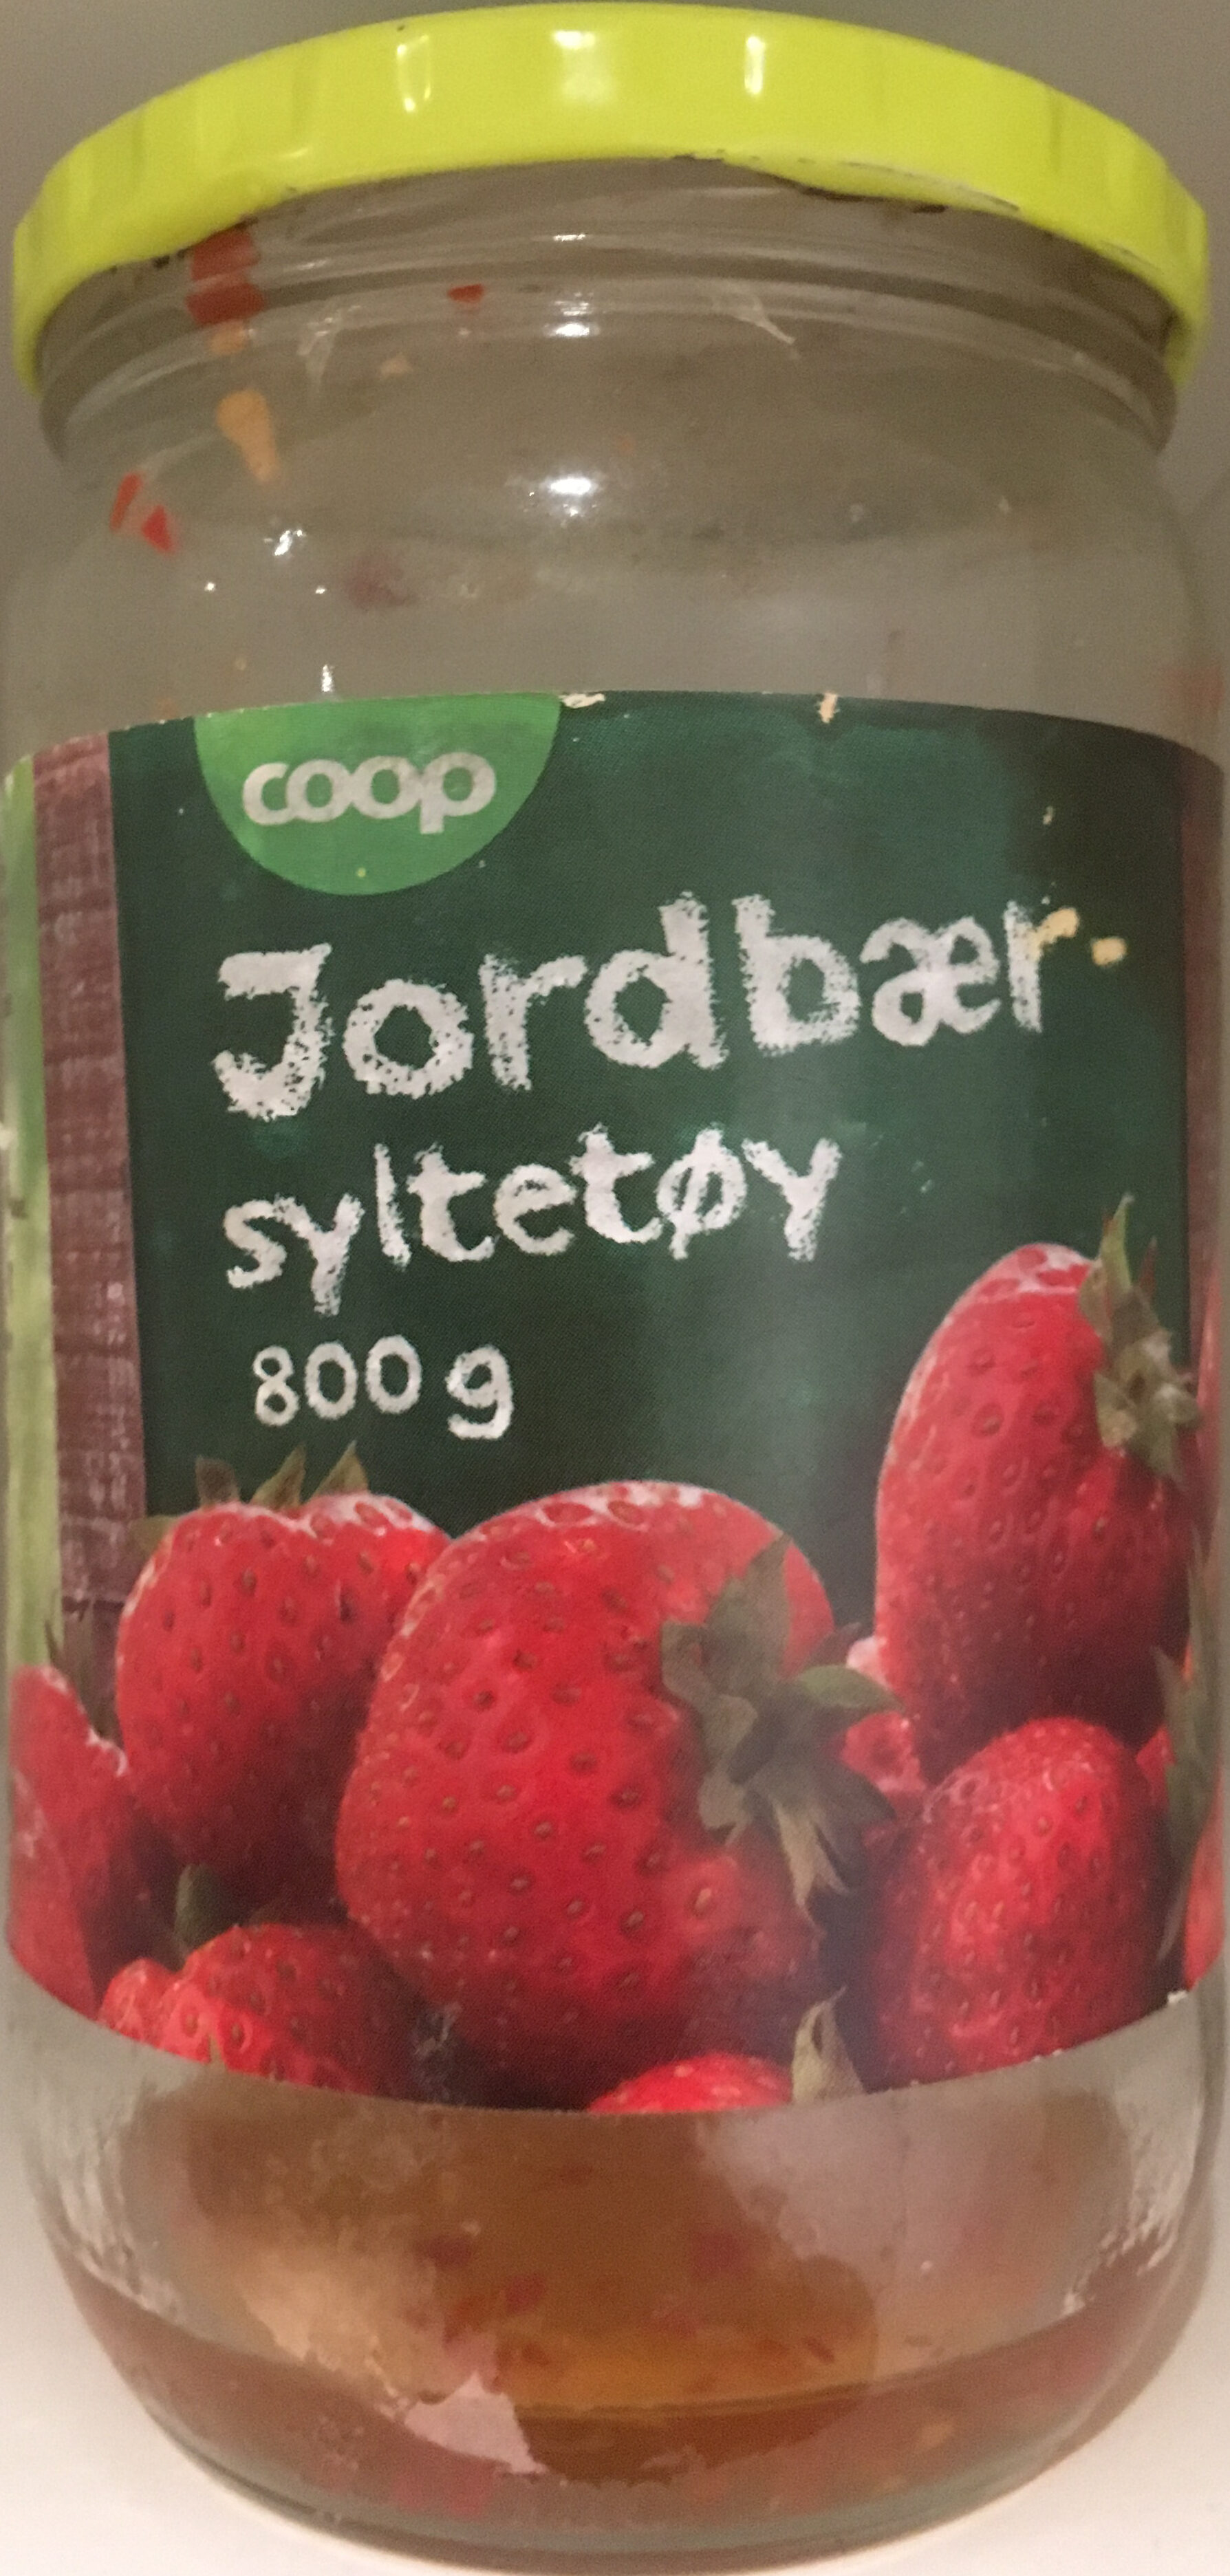 Jordbærsyltetøy - Product - nb